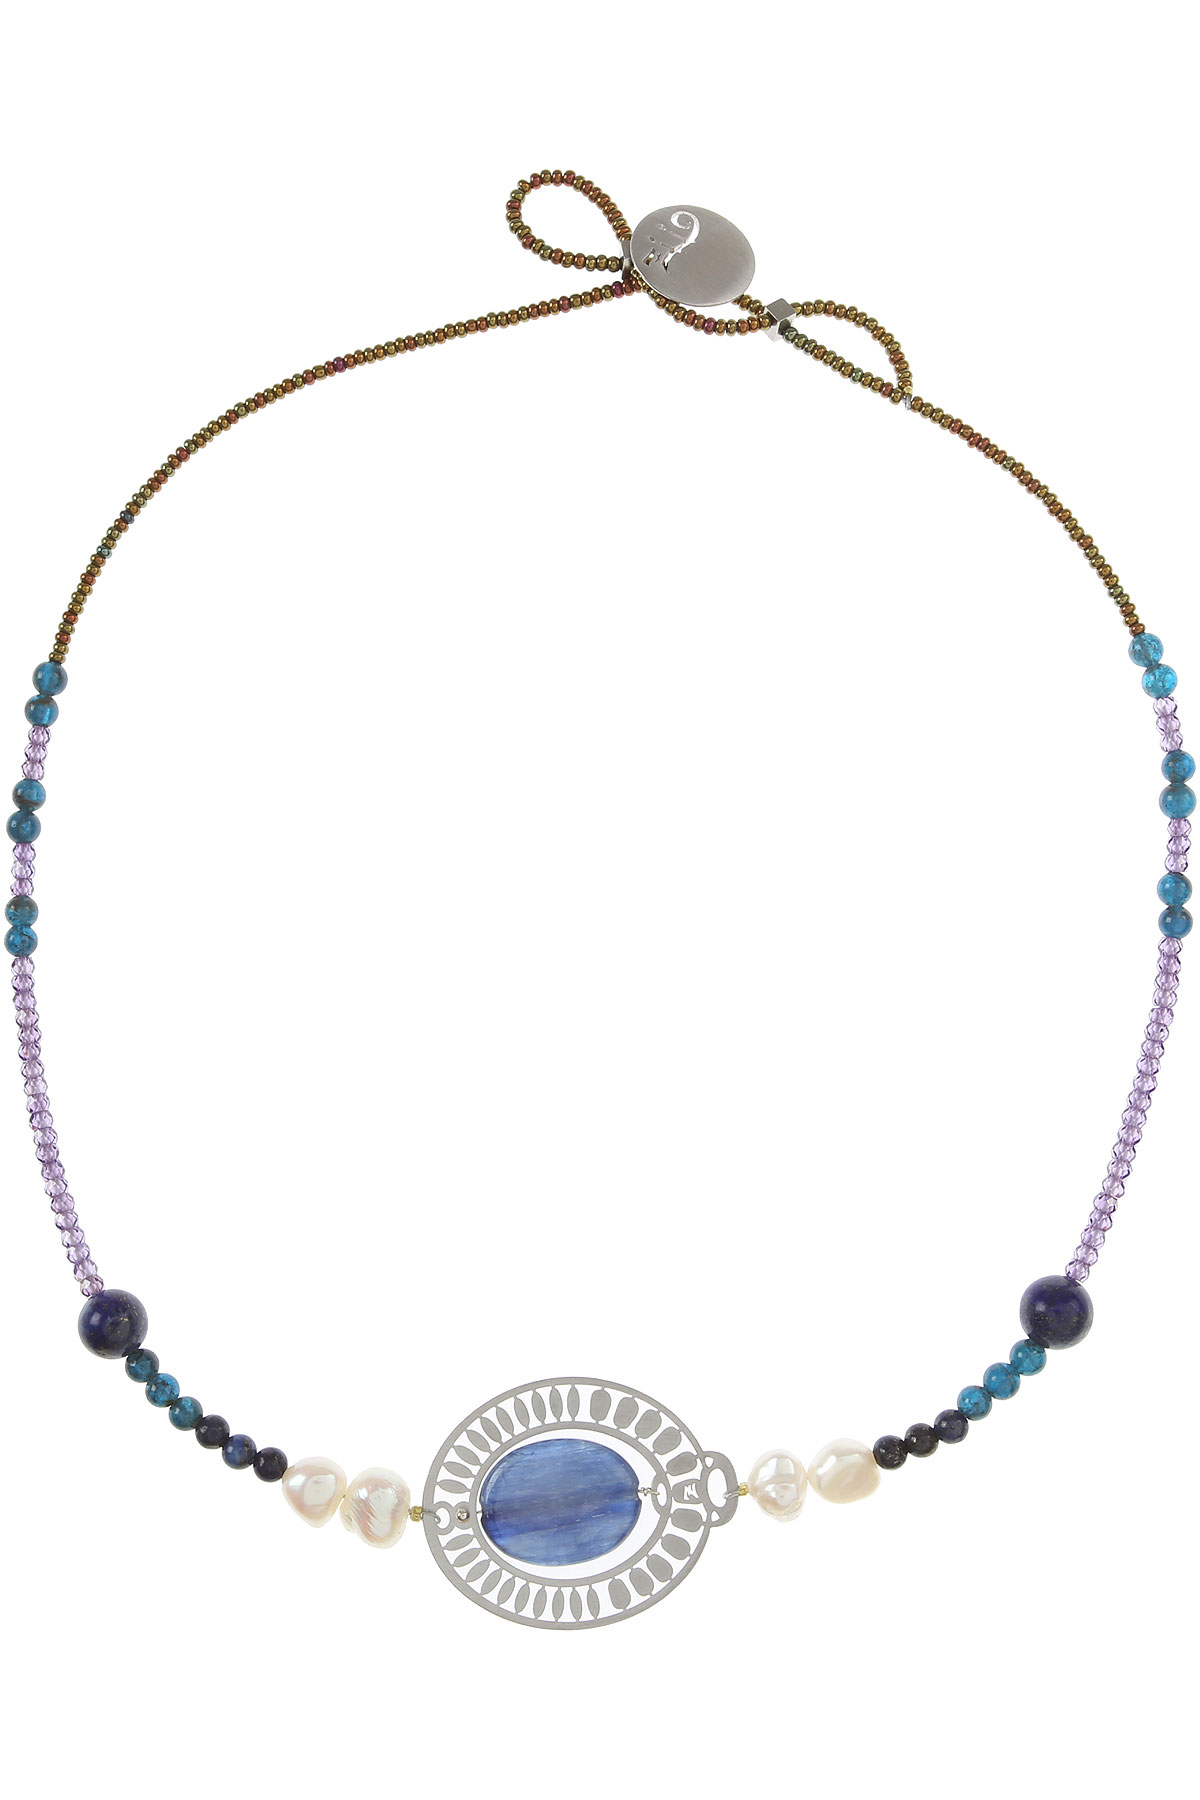 Ziio Jewellery Halskette für Damen, Blau, Apatit, 2017